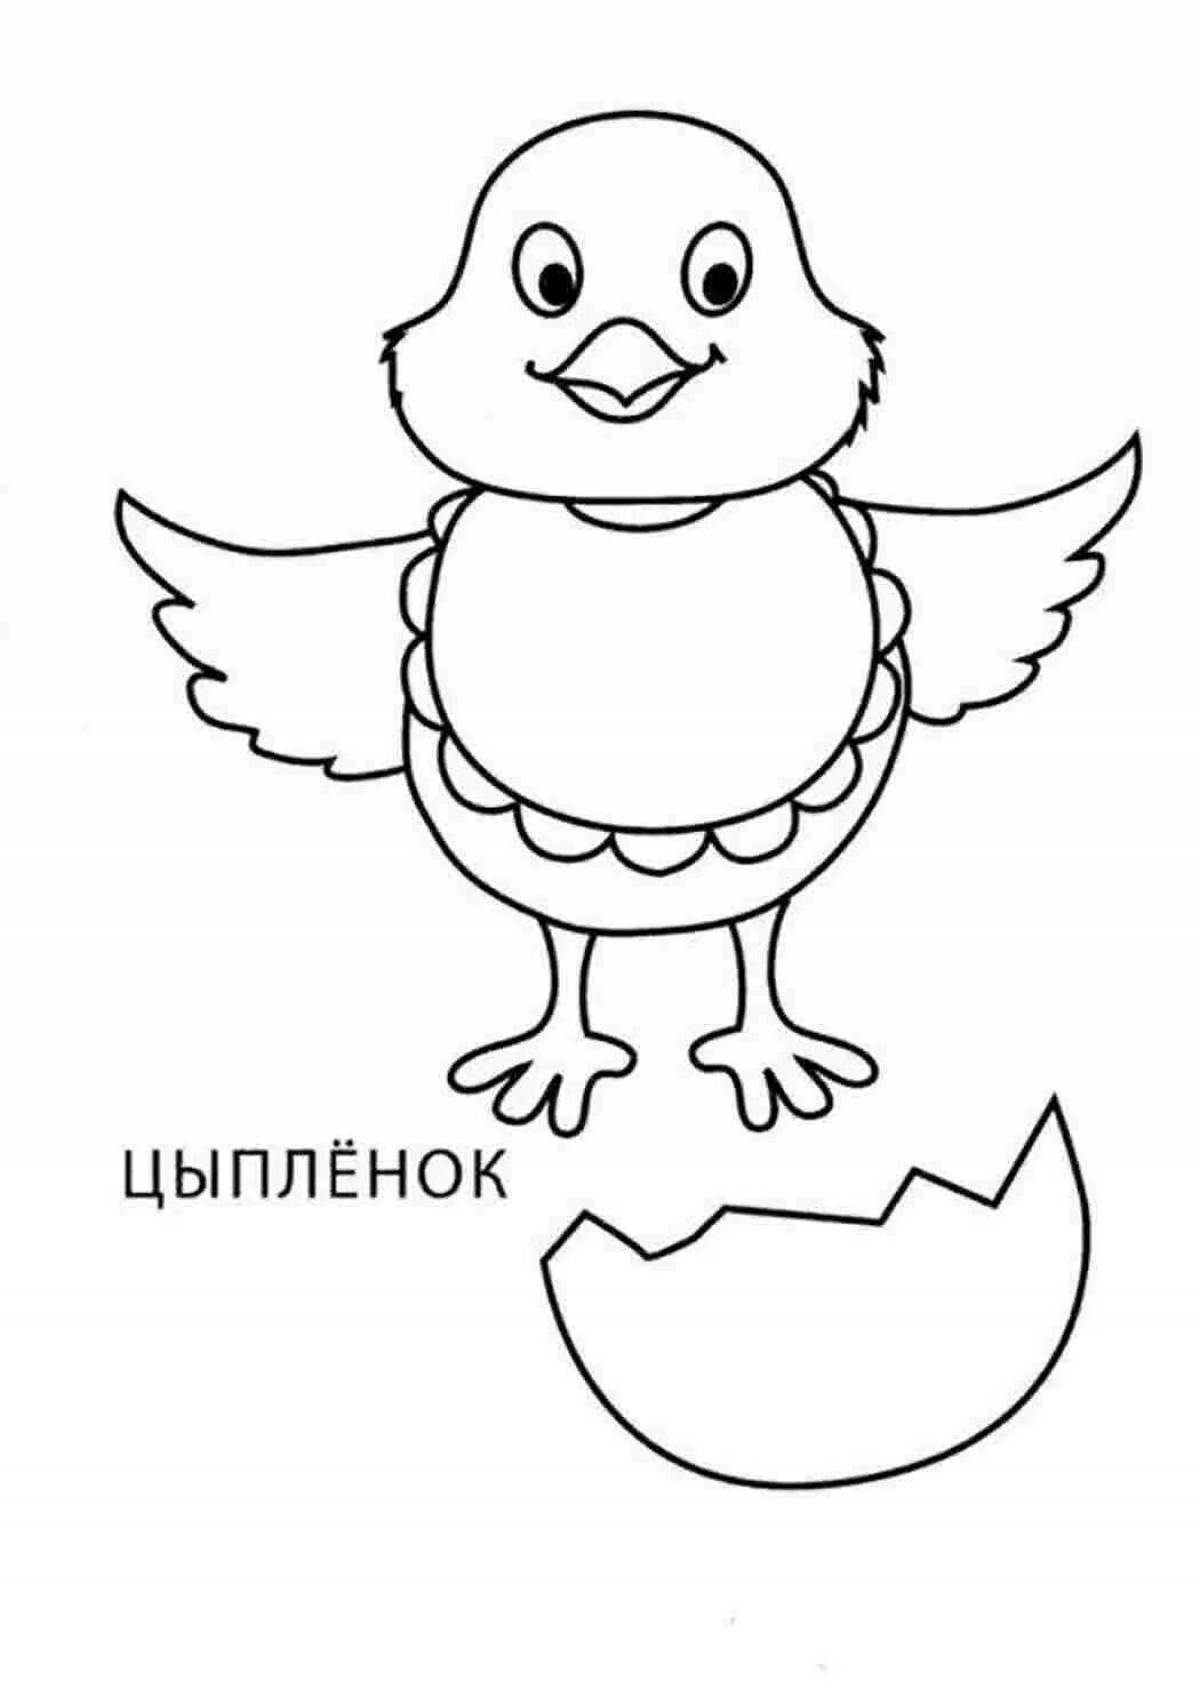 Увлекательное рисование цыплят для детей